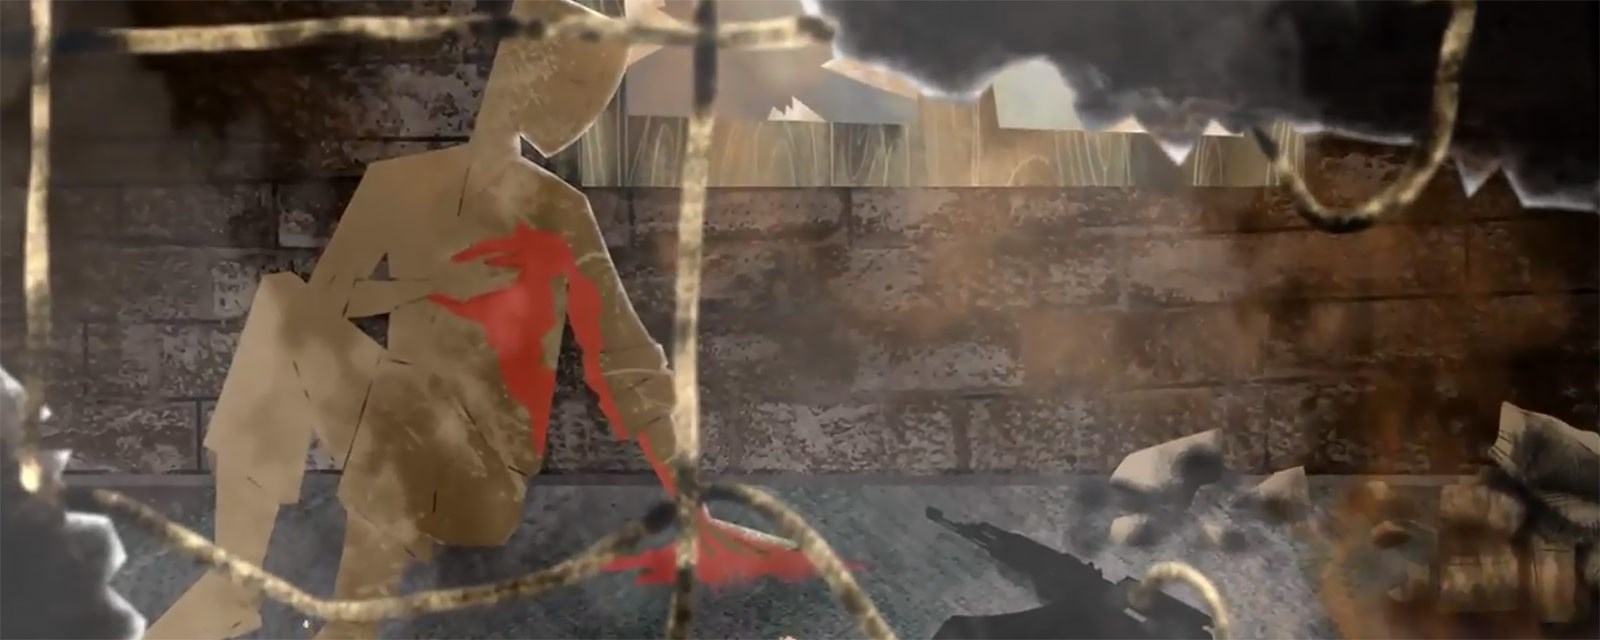 illustrasjon animert en blødende soldat holdet seg på hjertet sittende i et dystert ruinscenario med et automatgevær liggende ved siden av